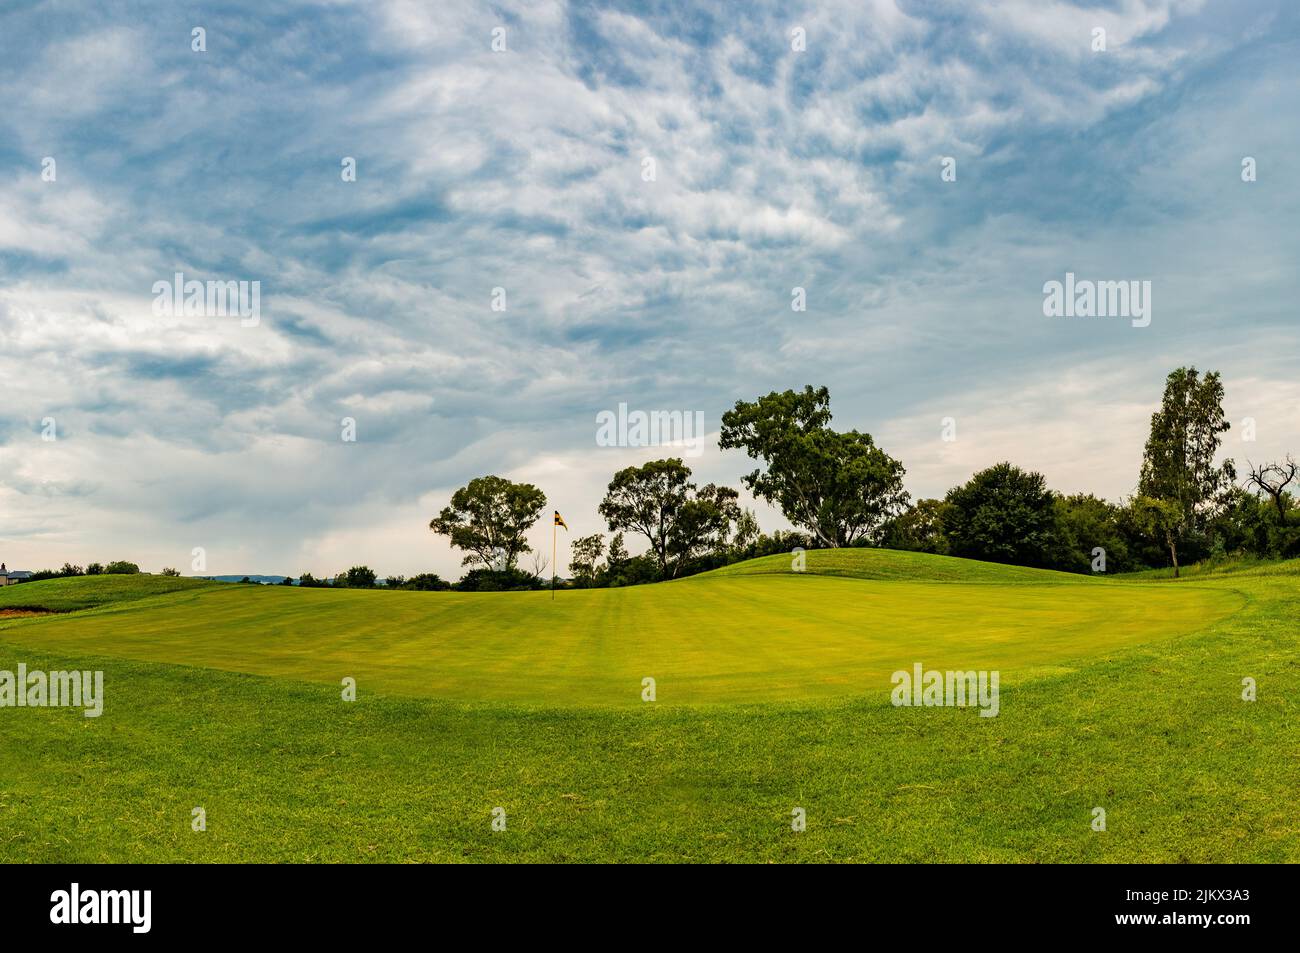 Eine natürliche Landschaft von einem schönen weiten grünen Ackerland, umgeben von Bäumen unter dem blau bewölkten Himmel Stockfoto